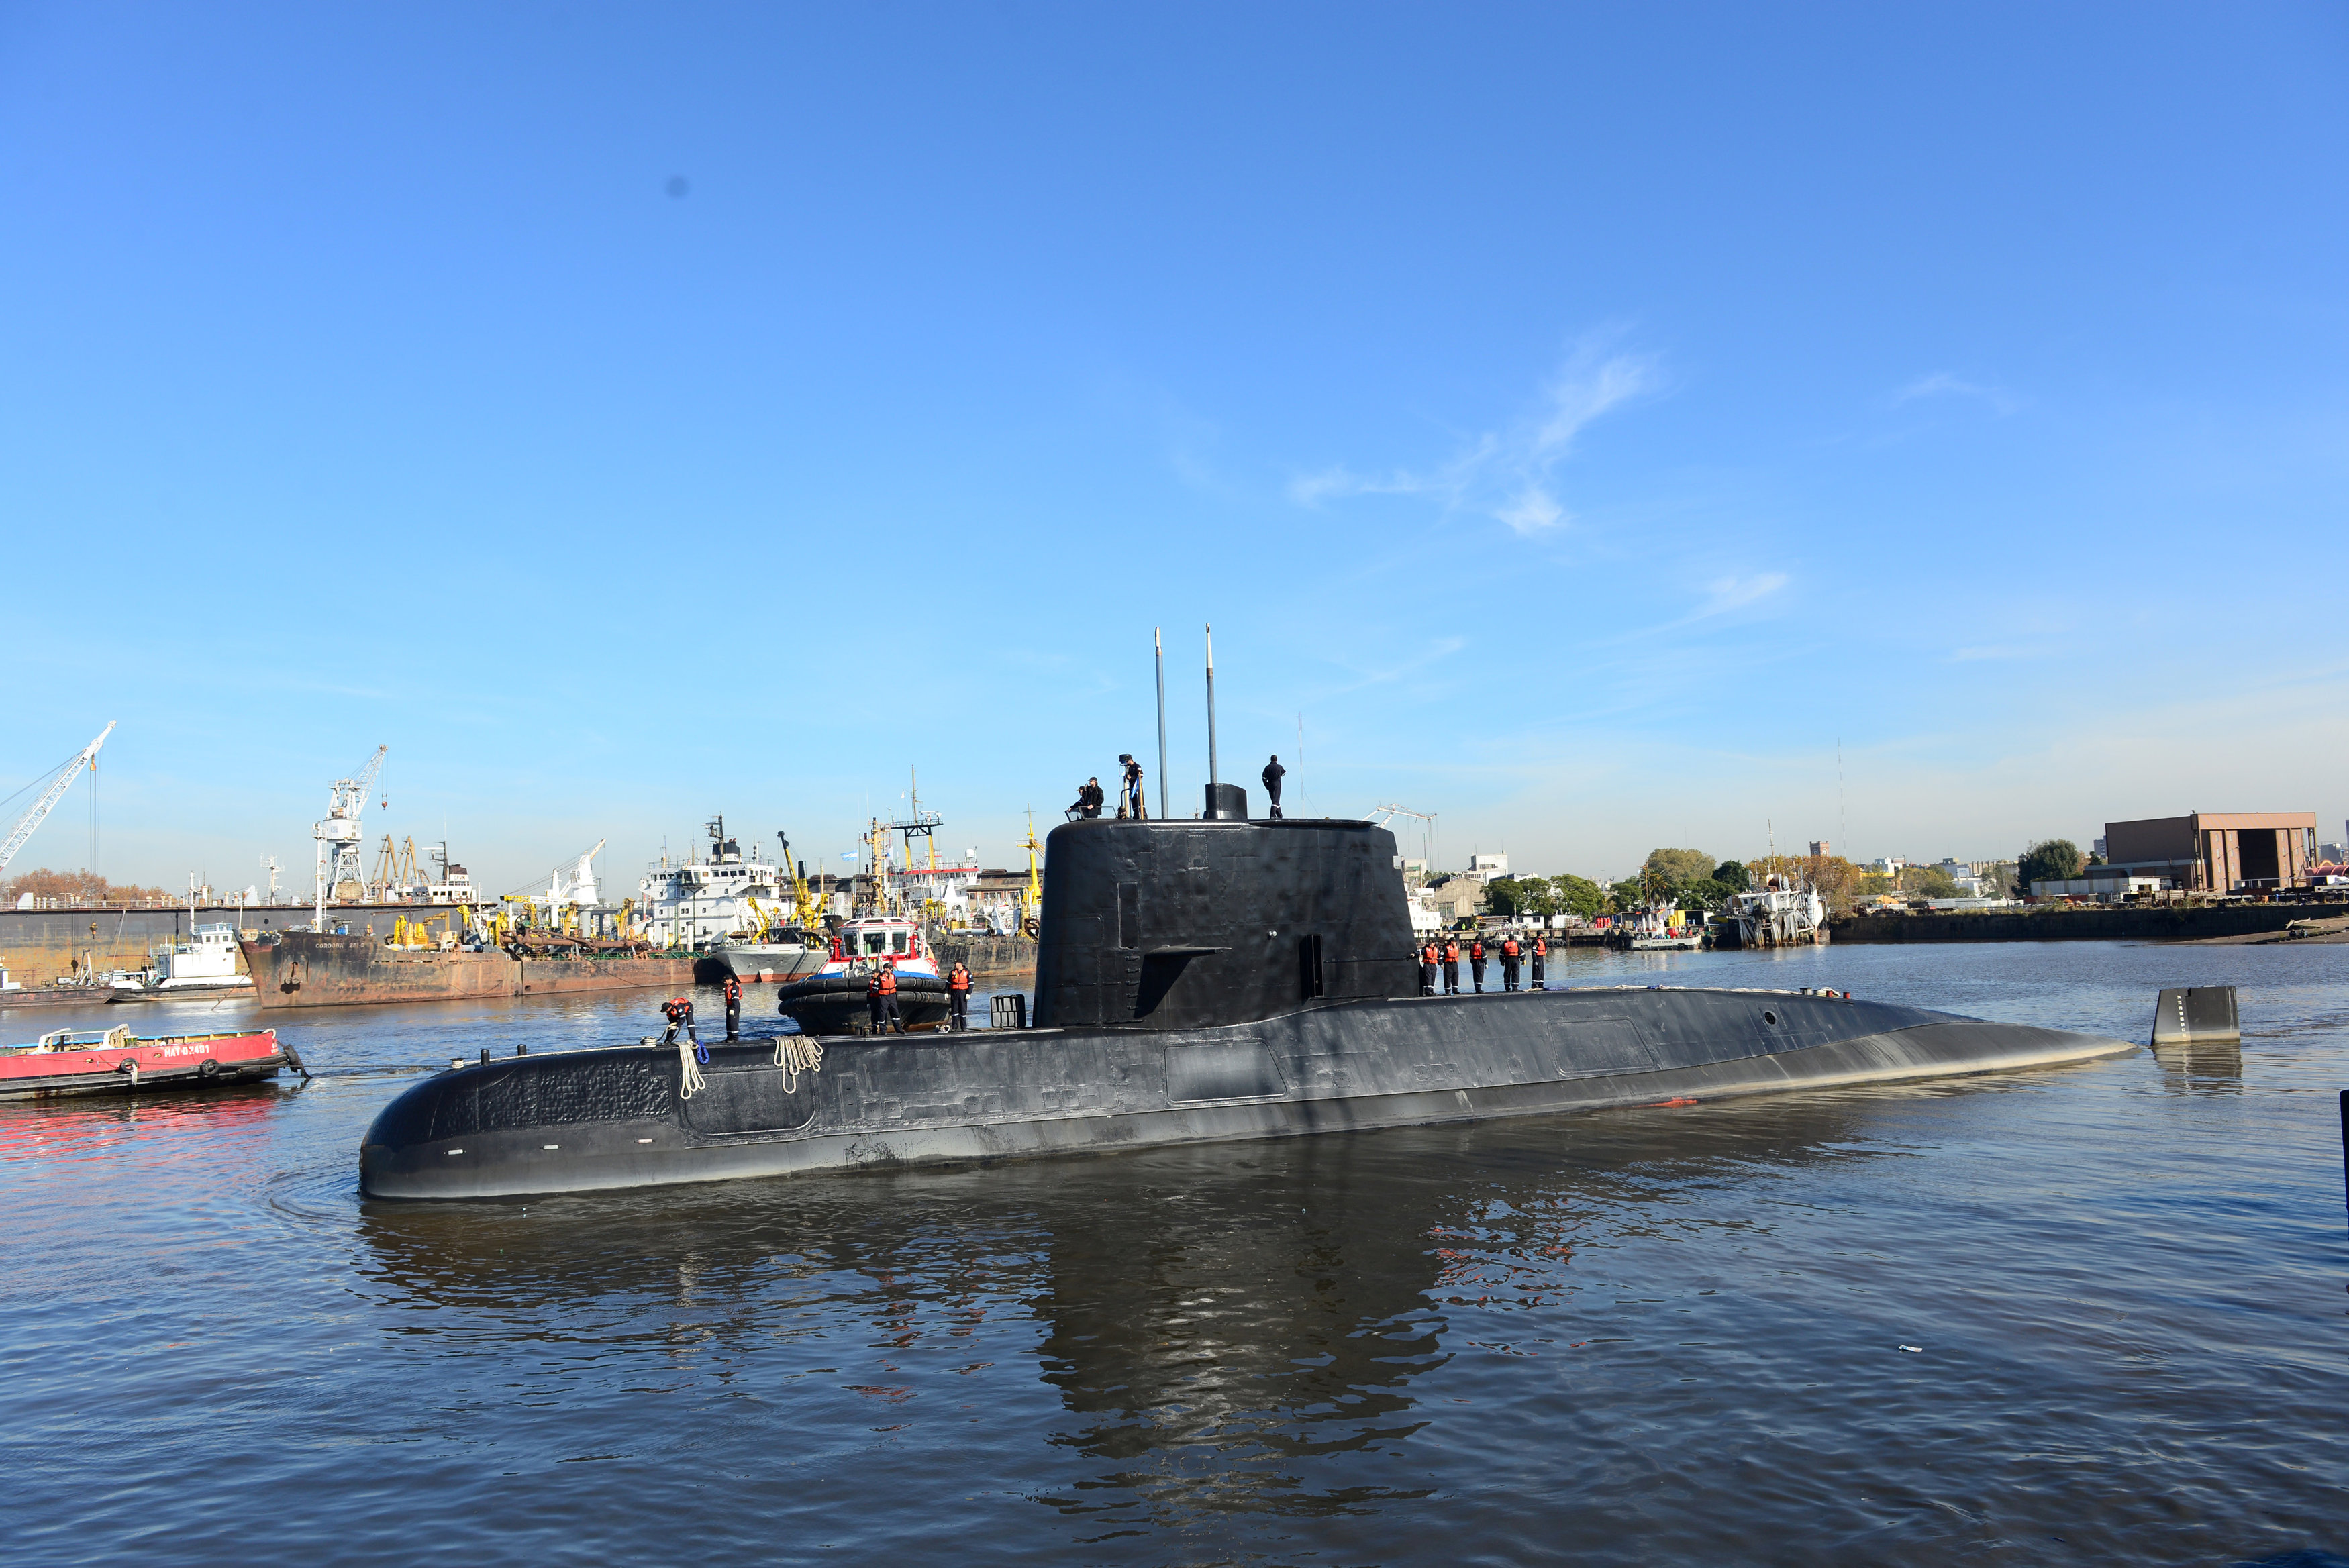 Hallan submarino argentino San Juan desaparecido hace un año